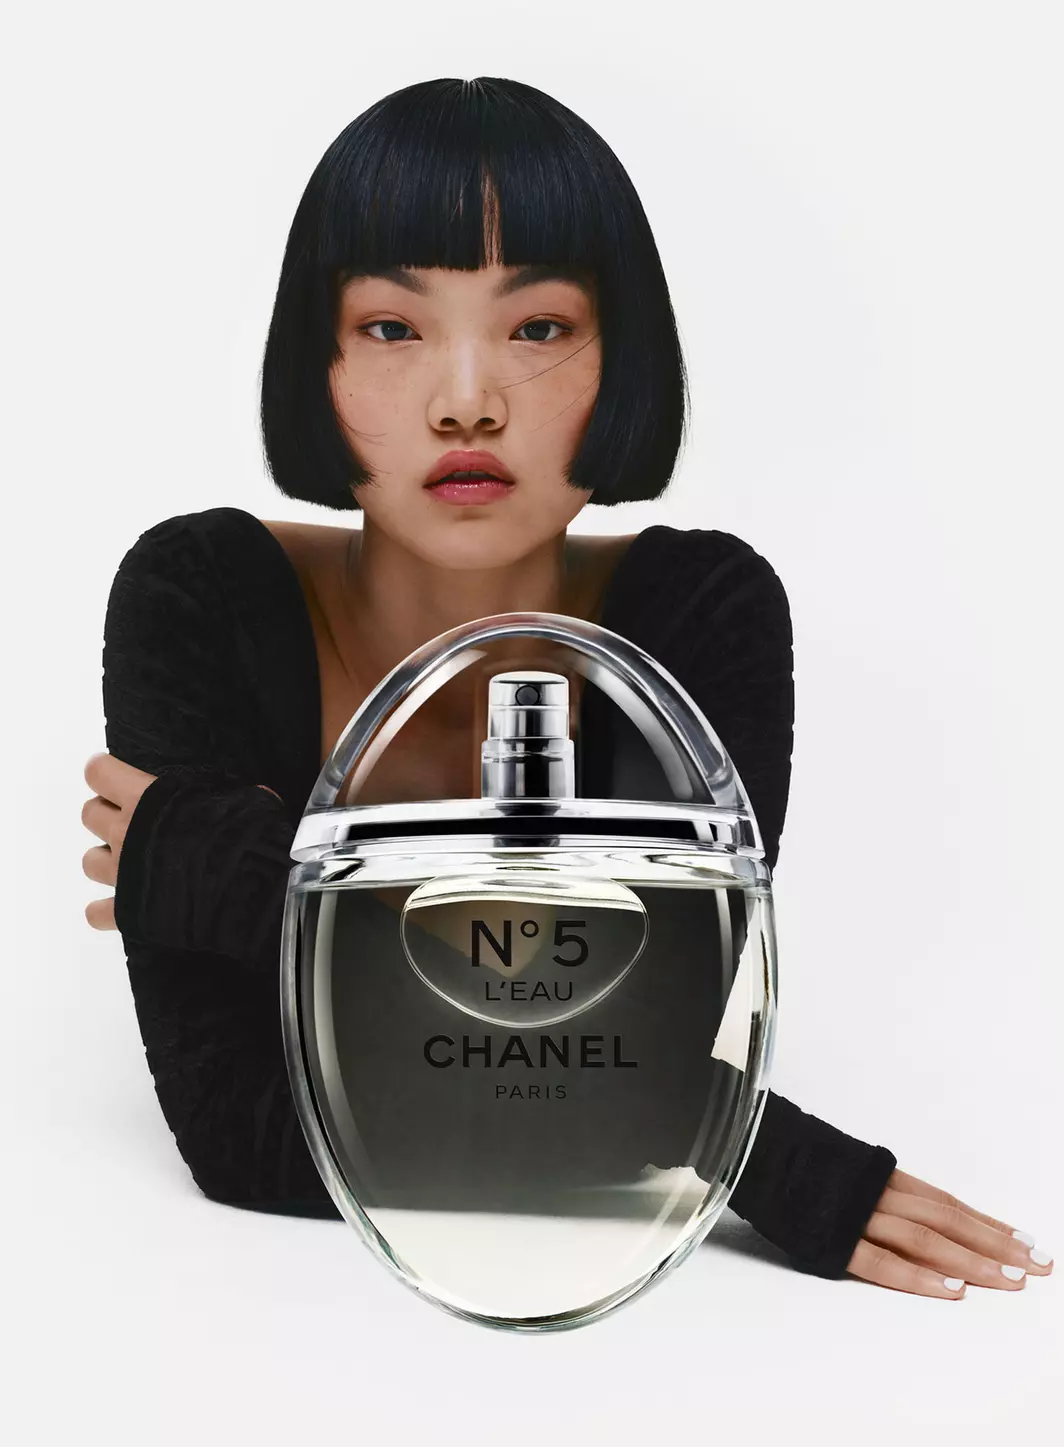 Chanel revisite le flacon de son parfum N°5 L’Eau